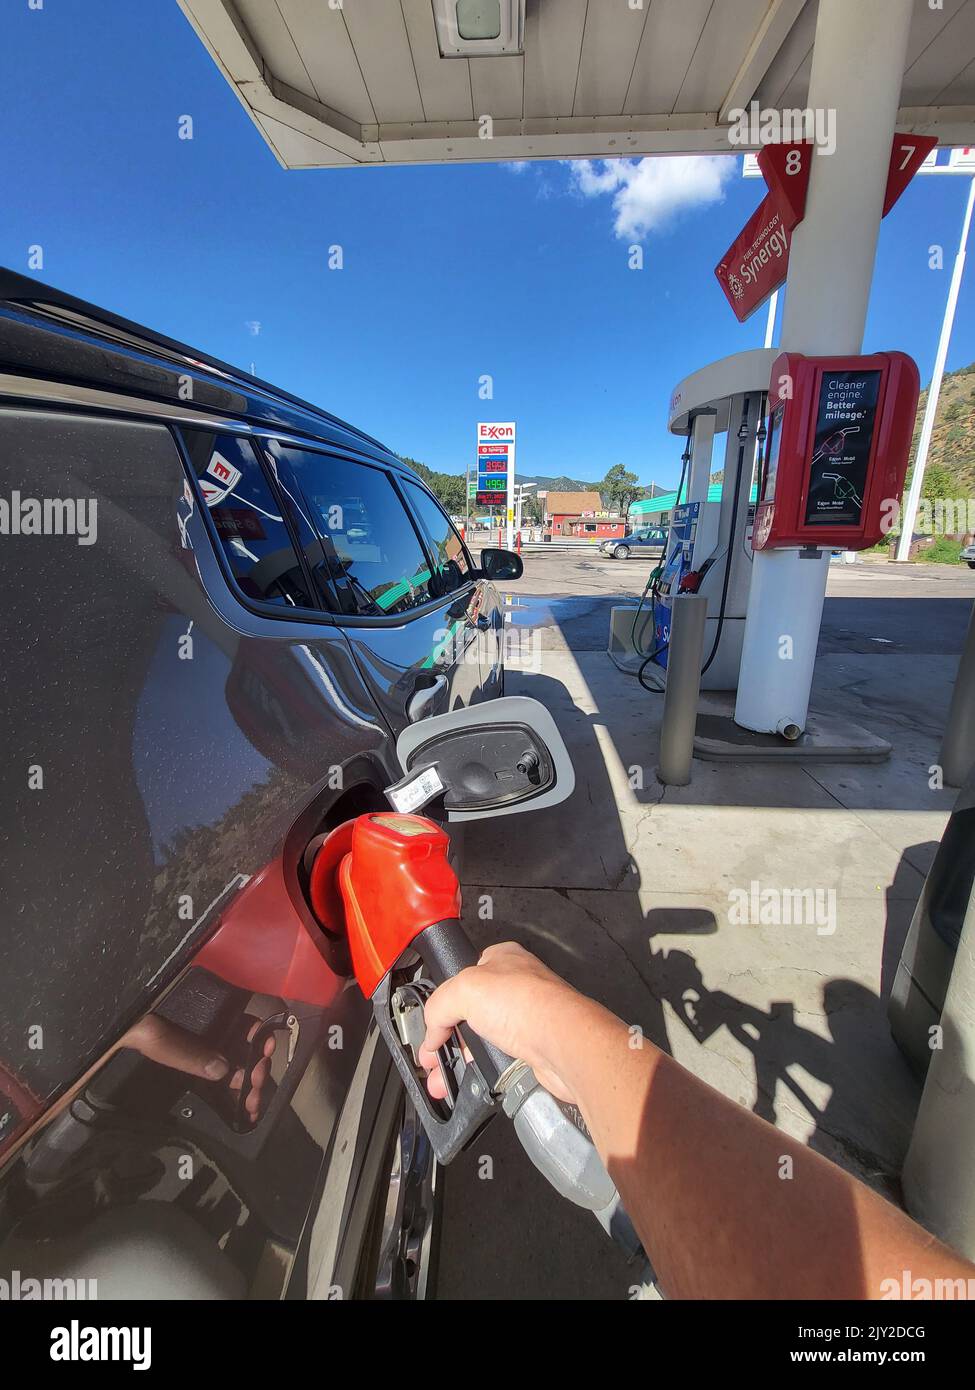 DENVER, CO - 4 de septiembre de 2022: Repostar un coche en Exxon Retail Gas Location. ExxonMobil es la compañía de petróleo y gas más grande del mundo. Foto de stock